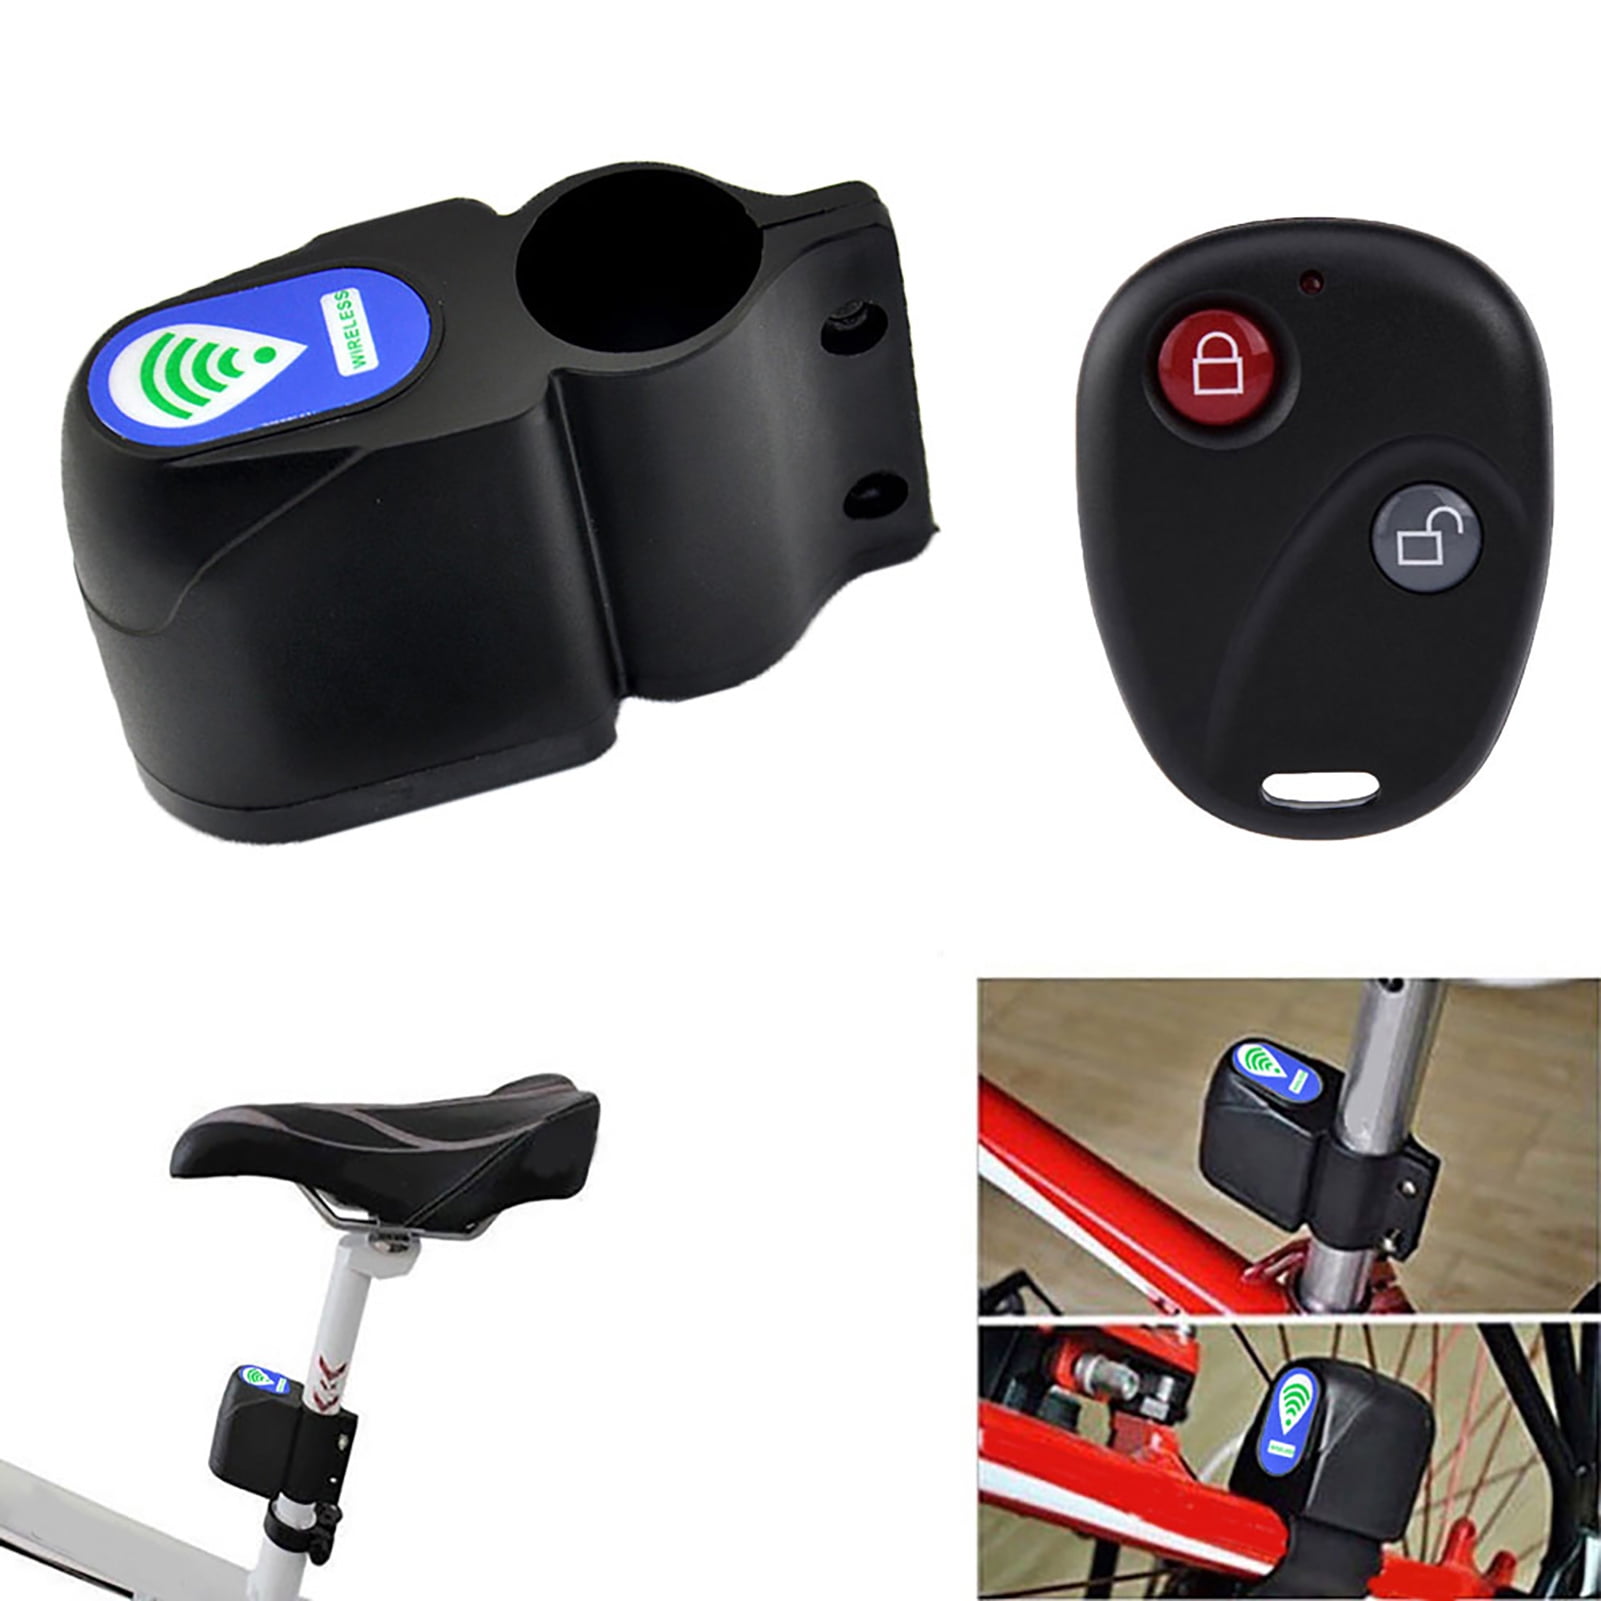 Sonew 120db Alarme Antivol pour Bicyclette, 0.1 Kg Ultralight Télécommande  Sans Fil Alarme de Vélo, Cyclisme Alarme de Sécurité Serrure